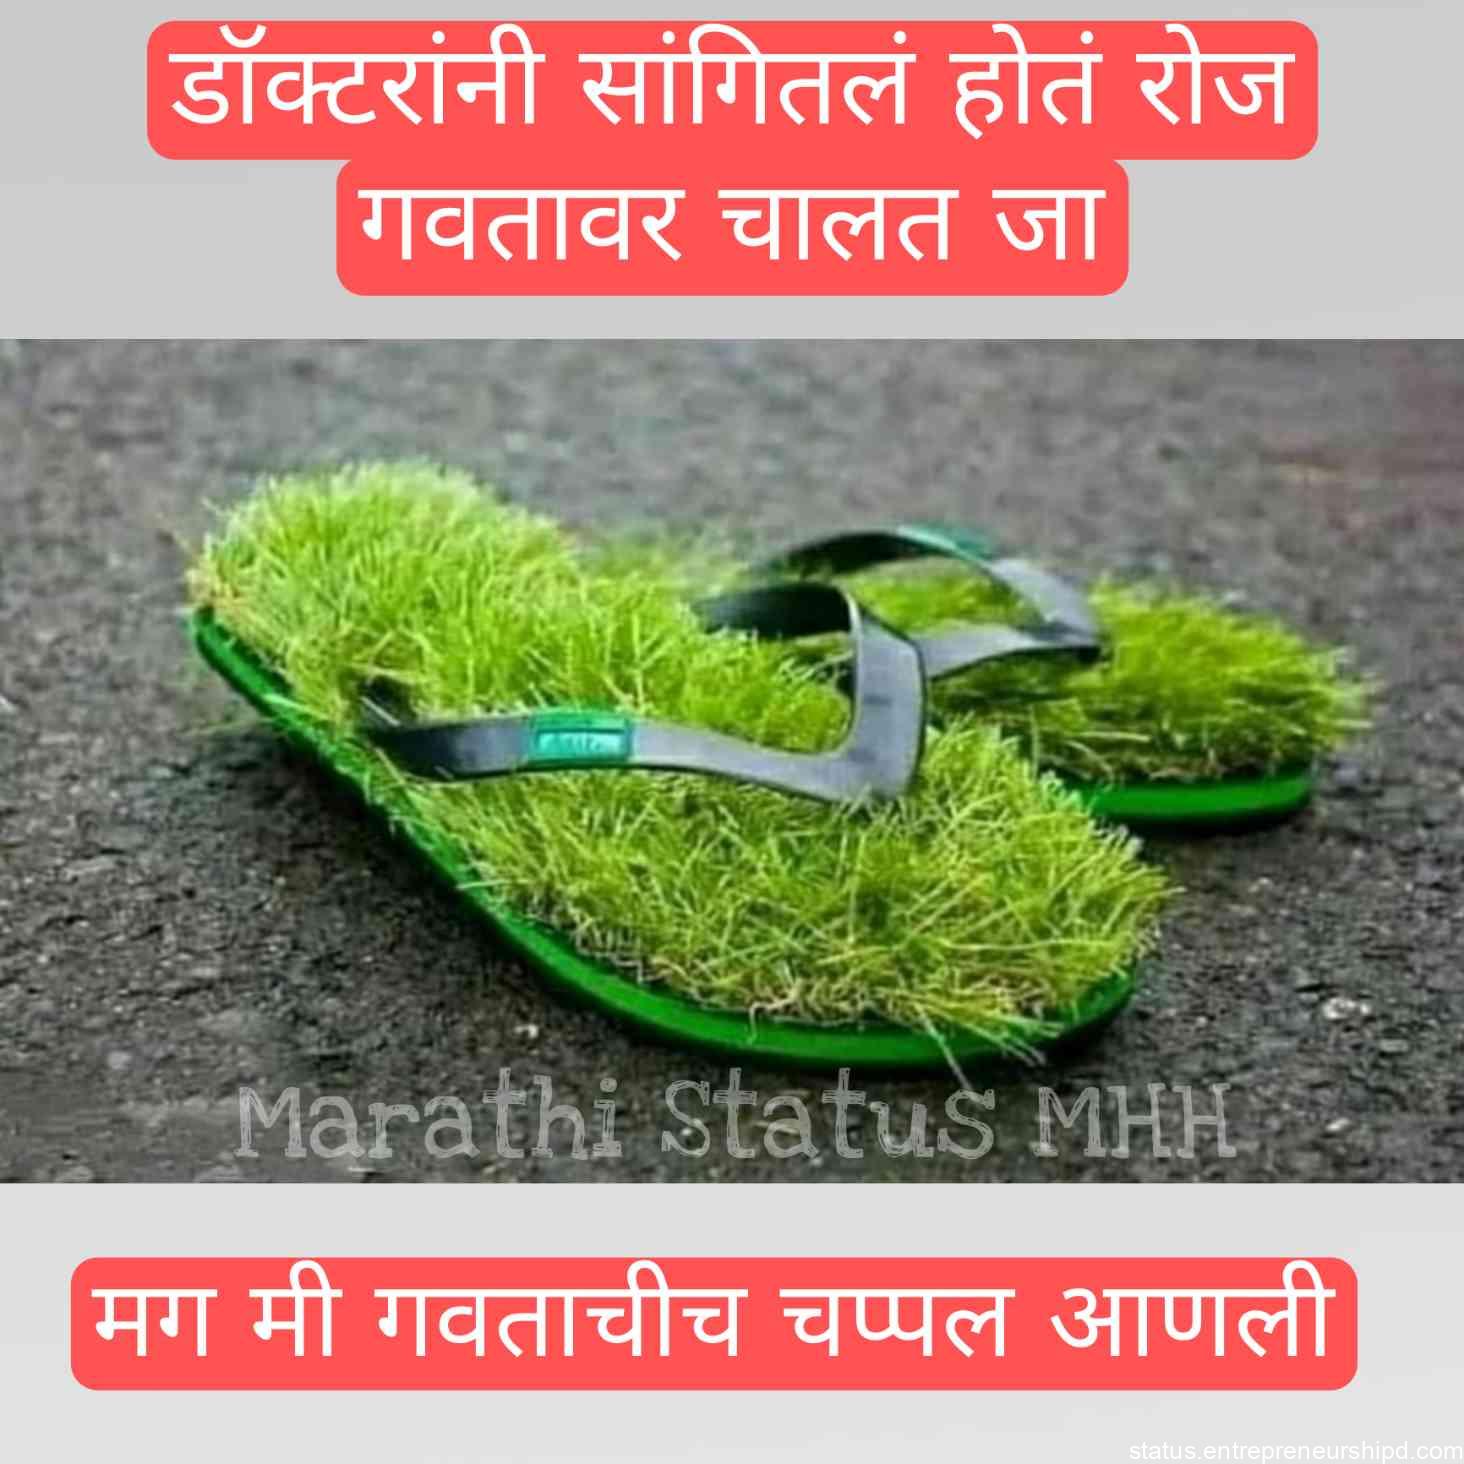 Marathi memes funny jokes image